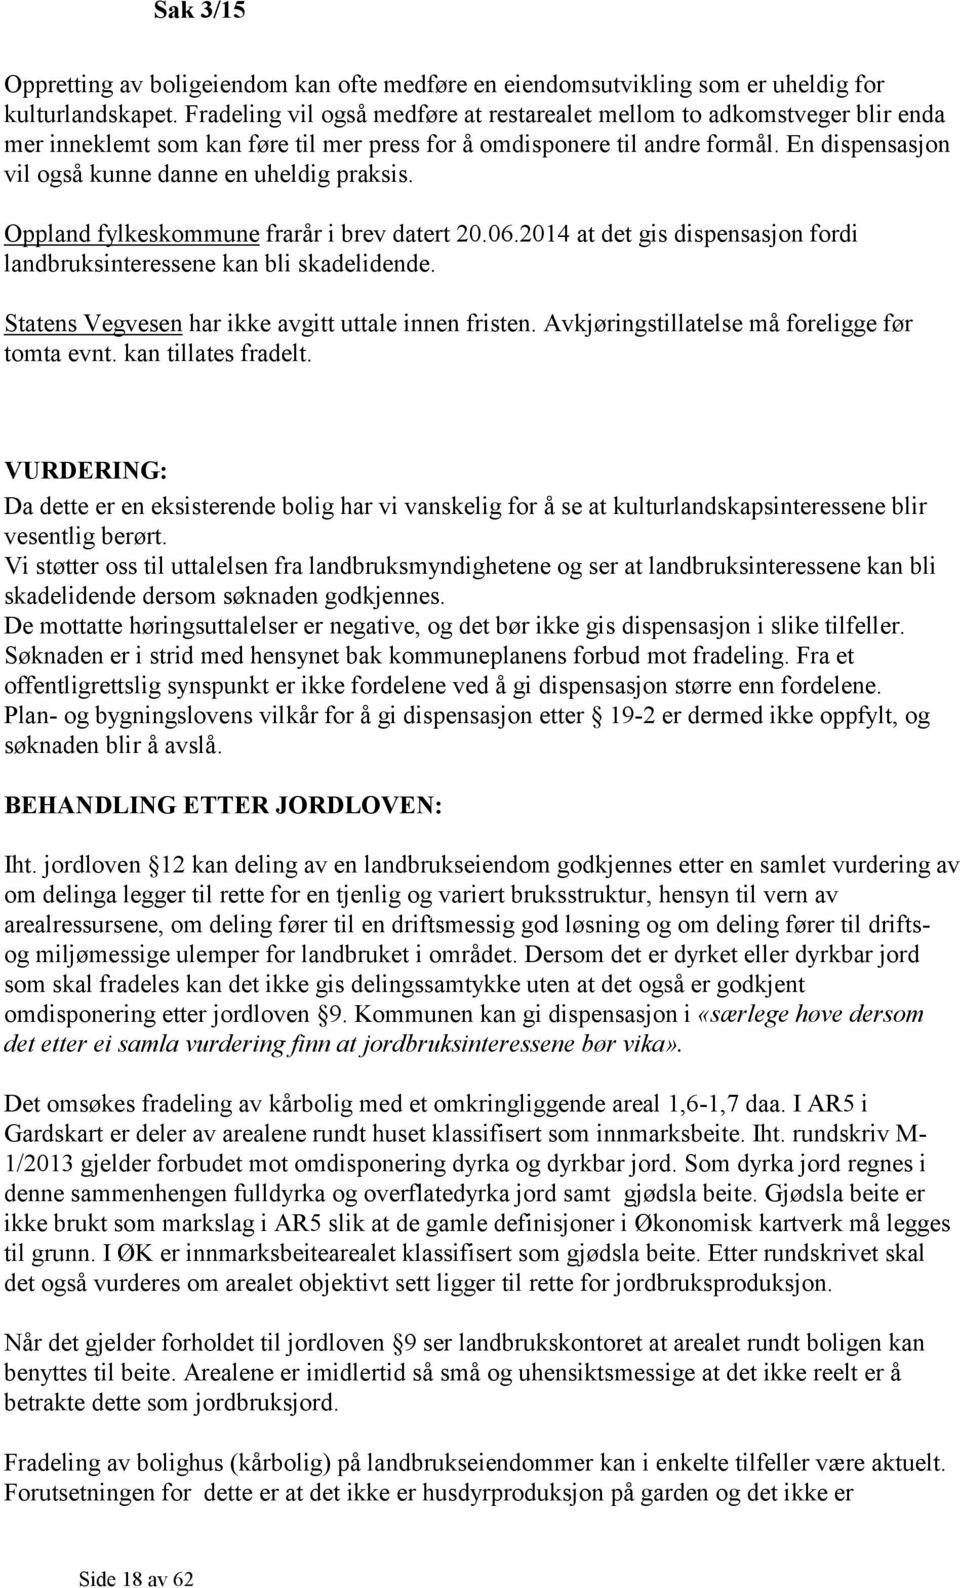 En dispensasjon vil også kunne danne en uheldig praksis. Oppland fylkeskommune frarår i brev datert 20.06.2014 at det gis dispensasjon fordi landbruksinteressene kan bli skadelidende.